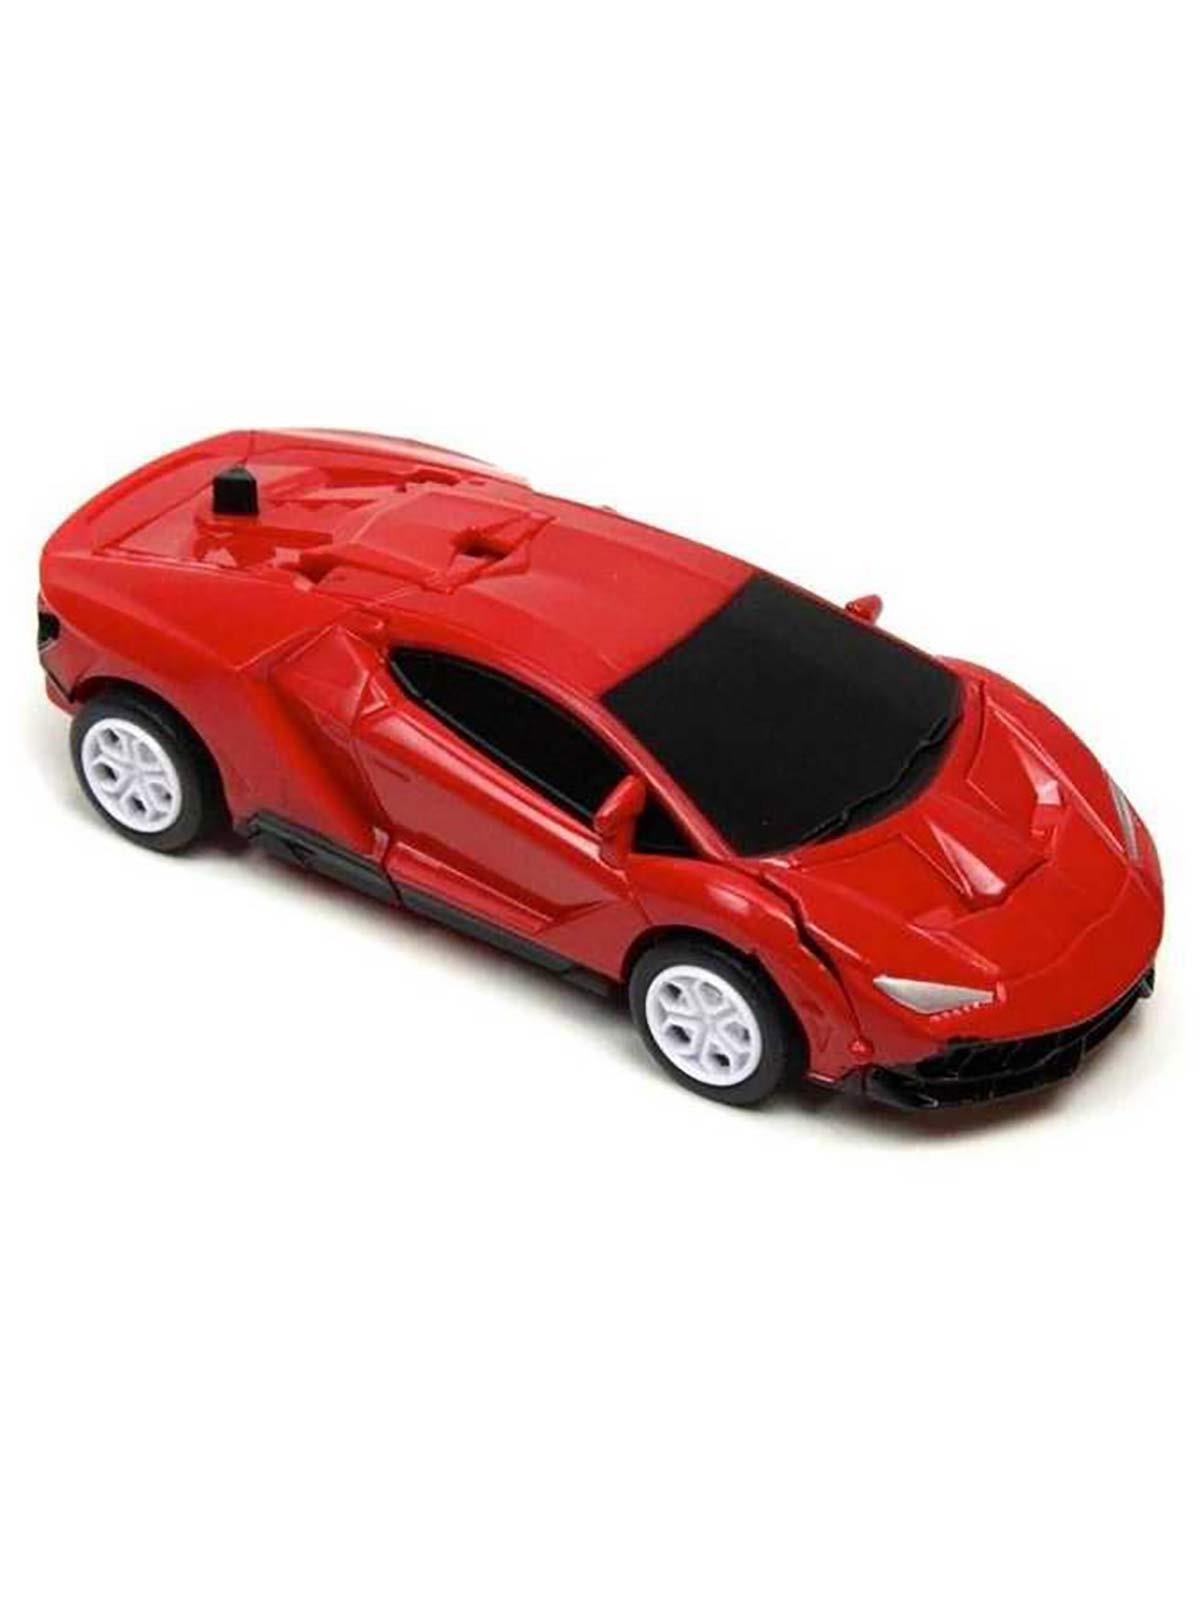 Vardem Tek Tuşla Robota Dönüşen Metal Çekbırak Lamborghini Araba 1:32 Kırmızı